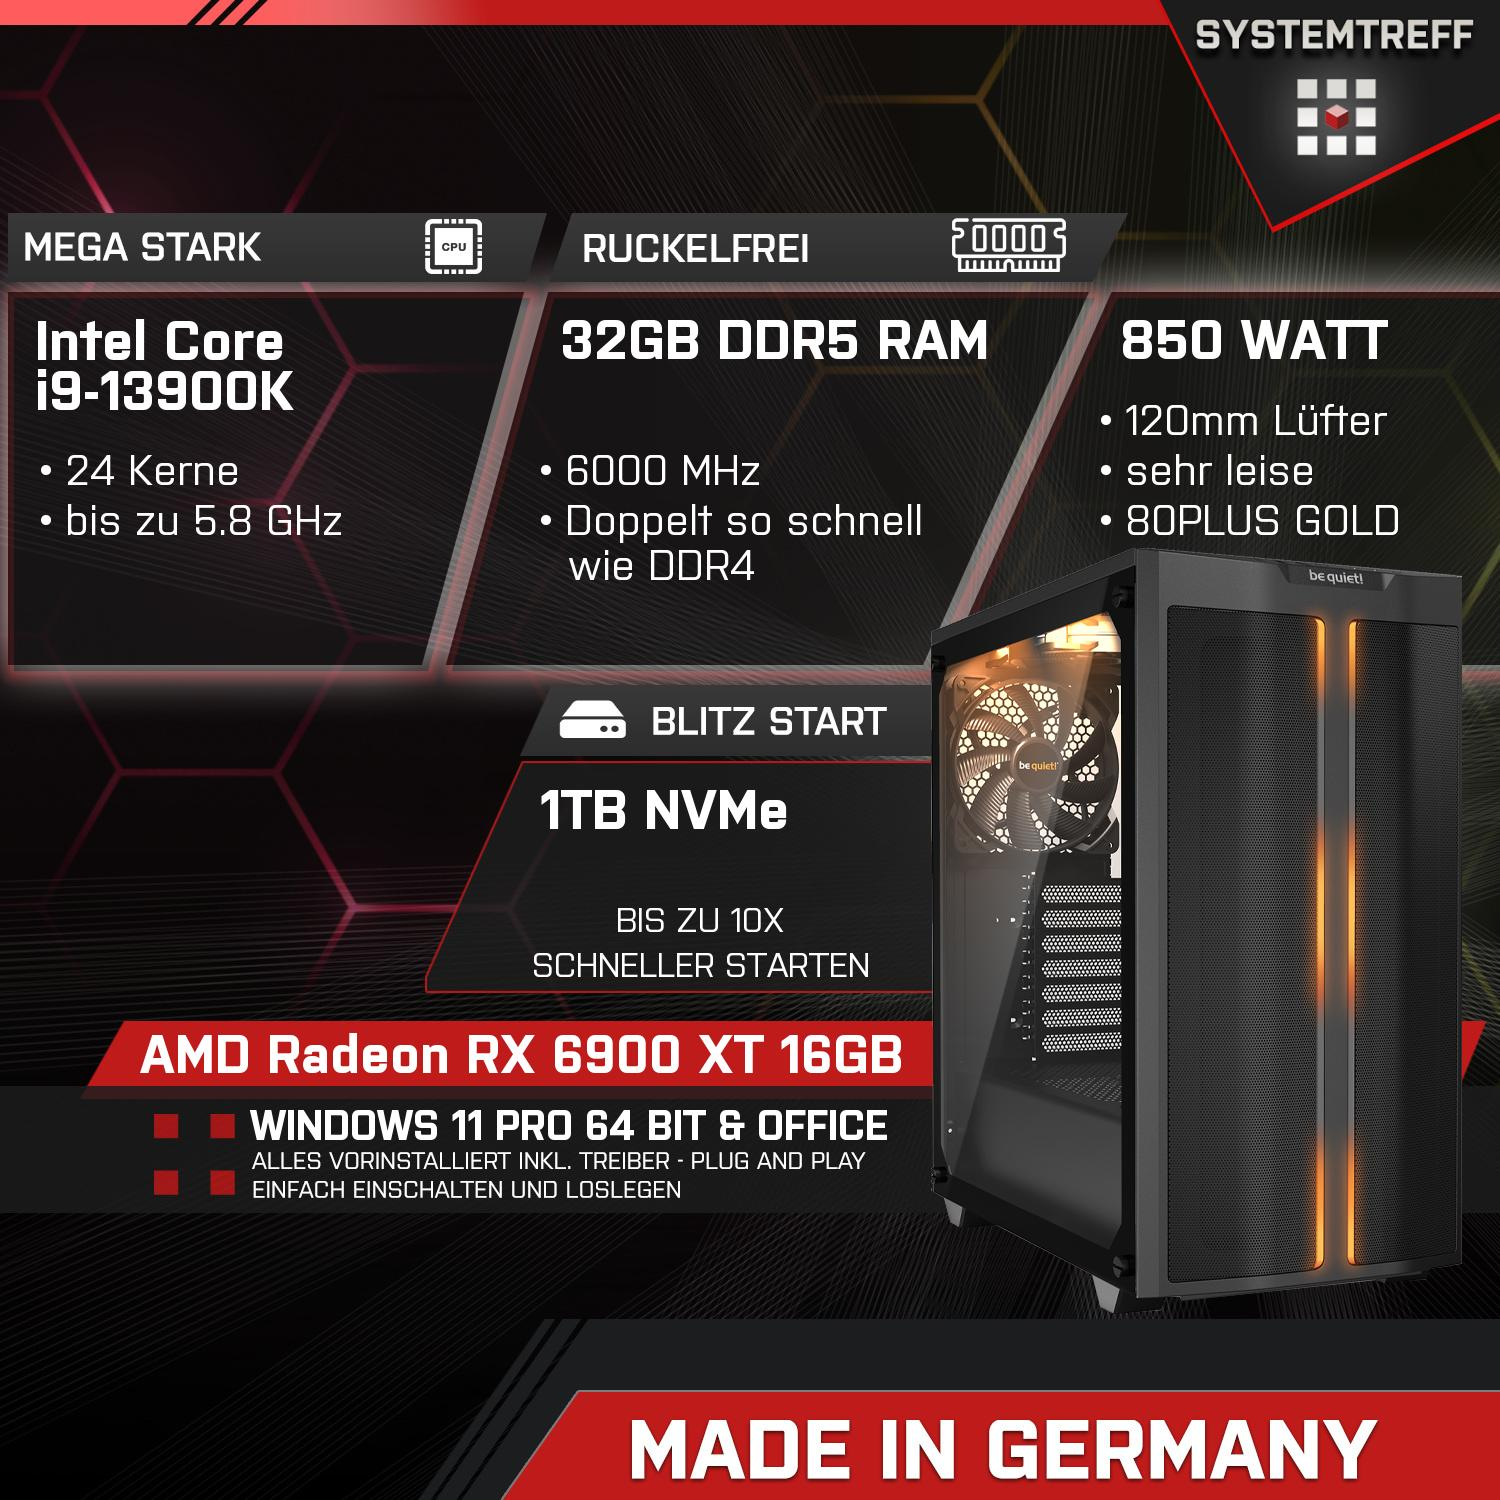 Gaming Intel RAM, mit Komplett i9-13900K 6900 1000 AMD RX i9-13900K, SYSTEMTREFF GB GB 32 XT Radeon GB Core Komplett PC mSSD, GDDR6, 16 16GB Prozessor,